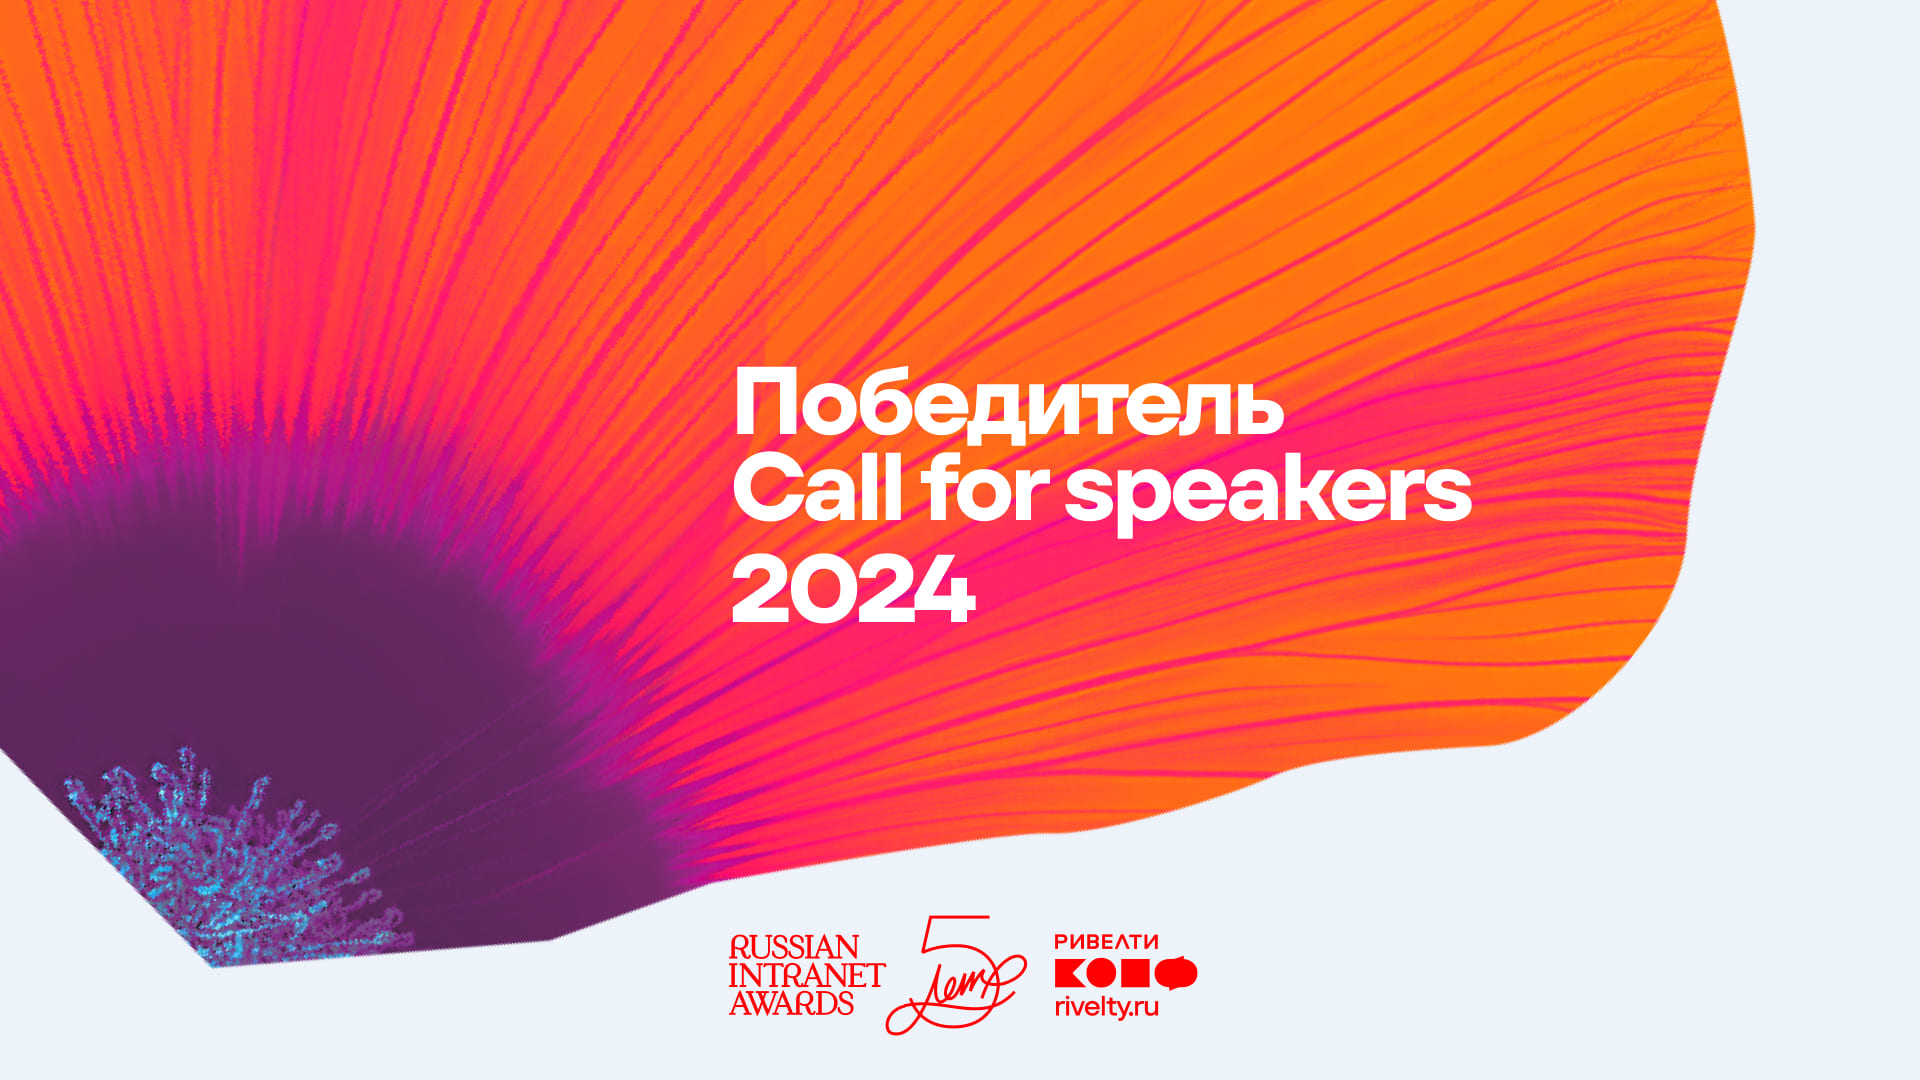 Дмитрий Самофалов — победитель Call for speakers 2024